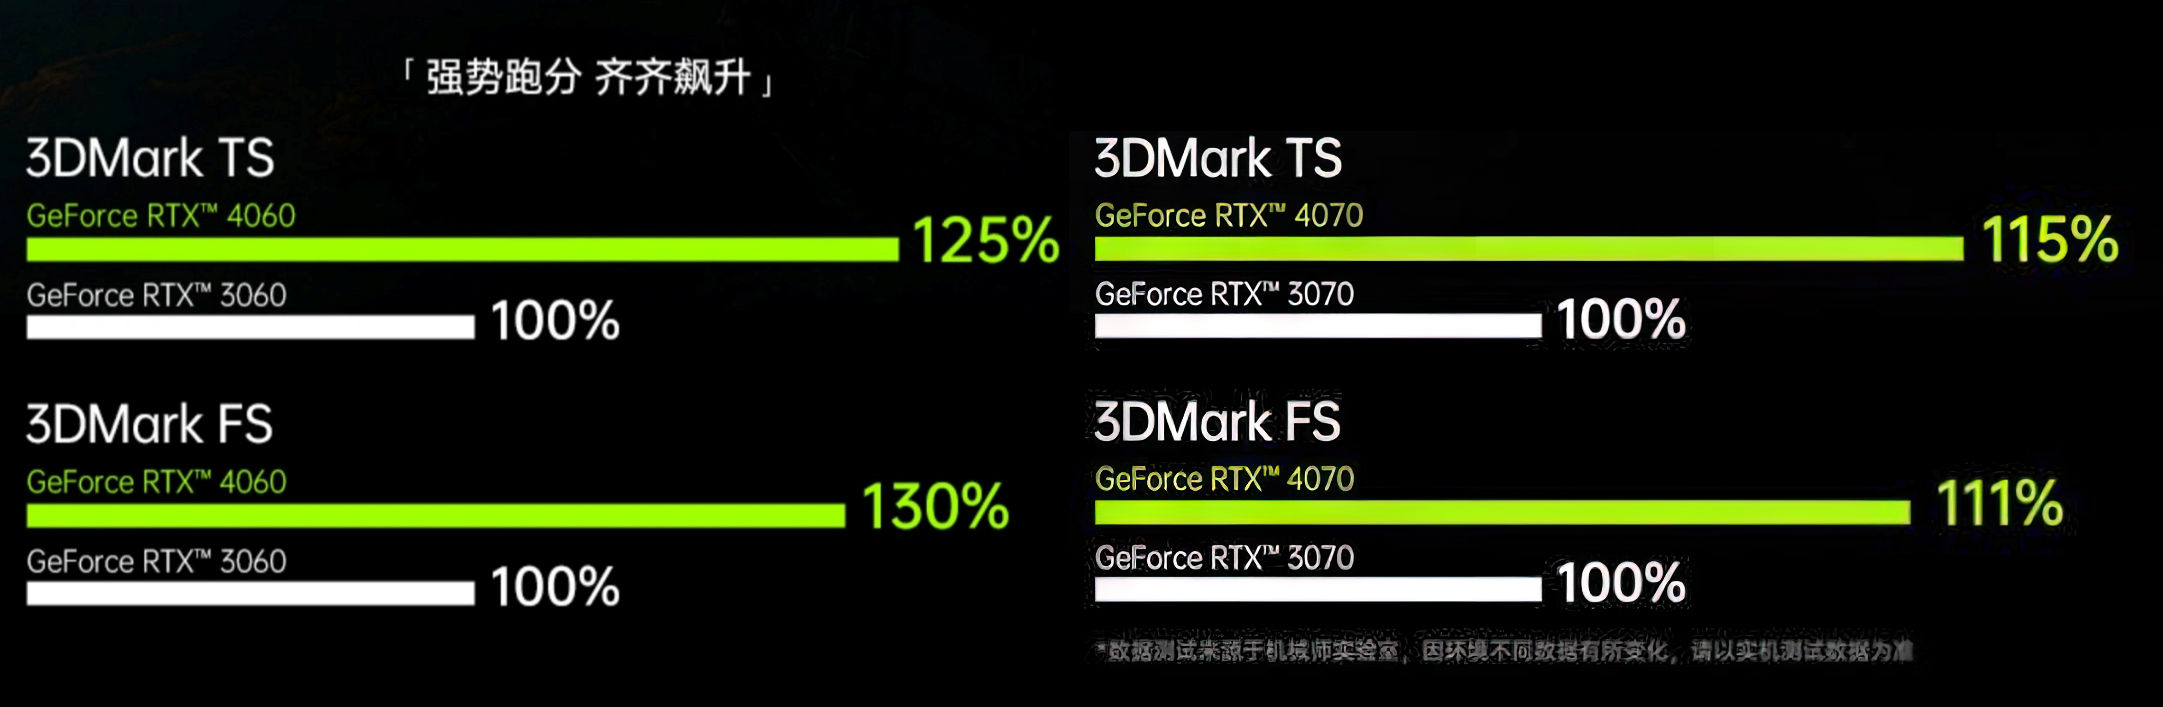 UserBenchmark: Nvidia RTX 4060 (Laptop) vs 4070